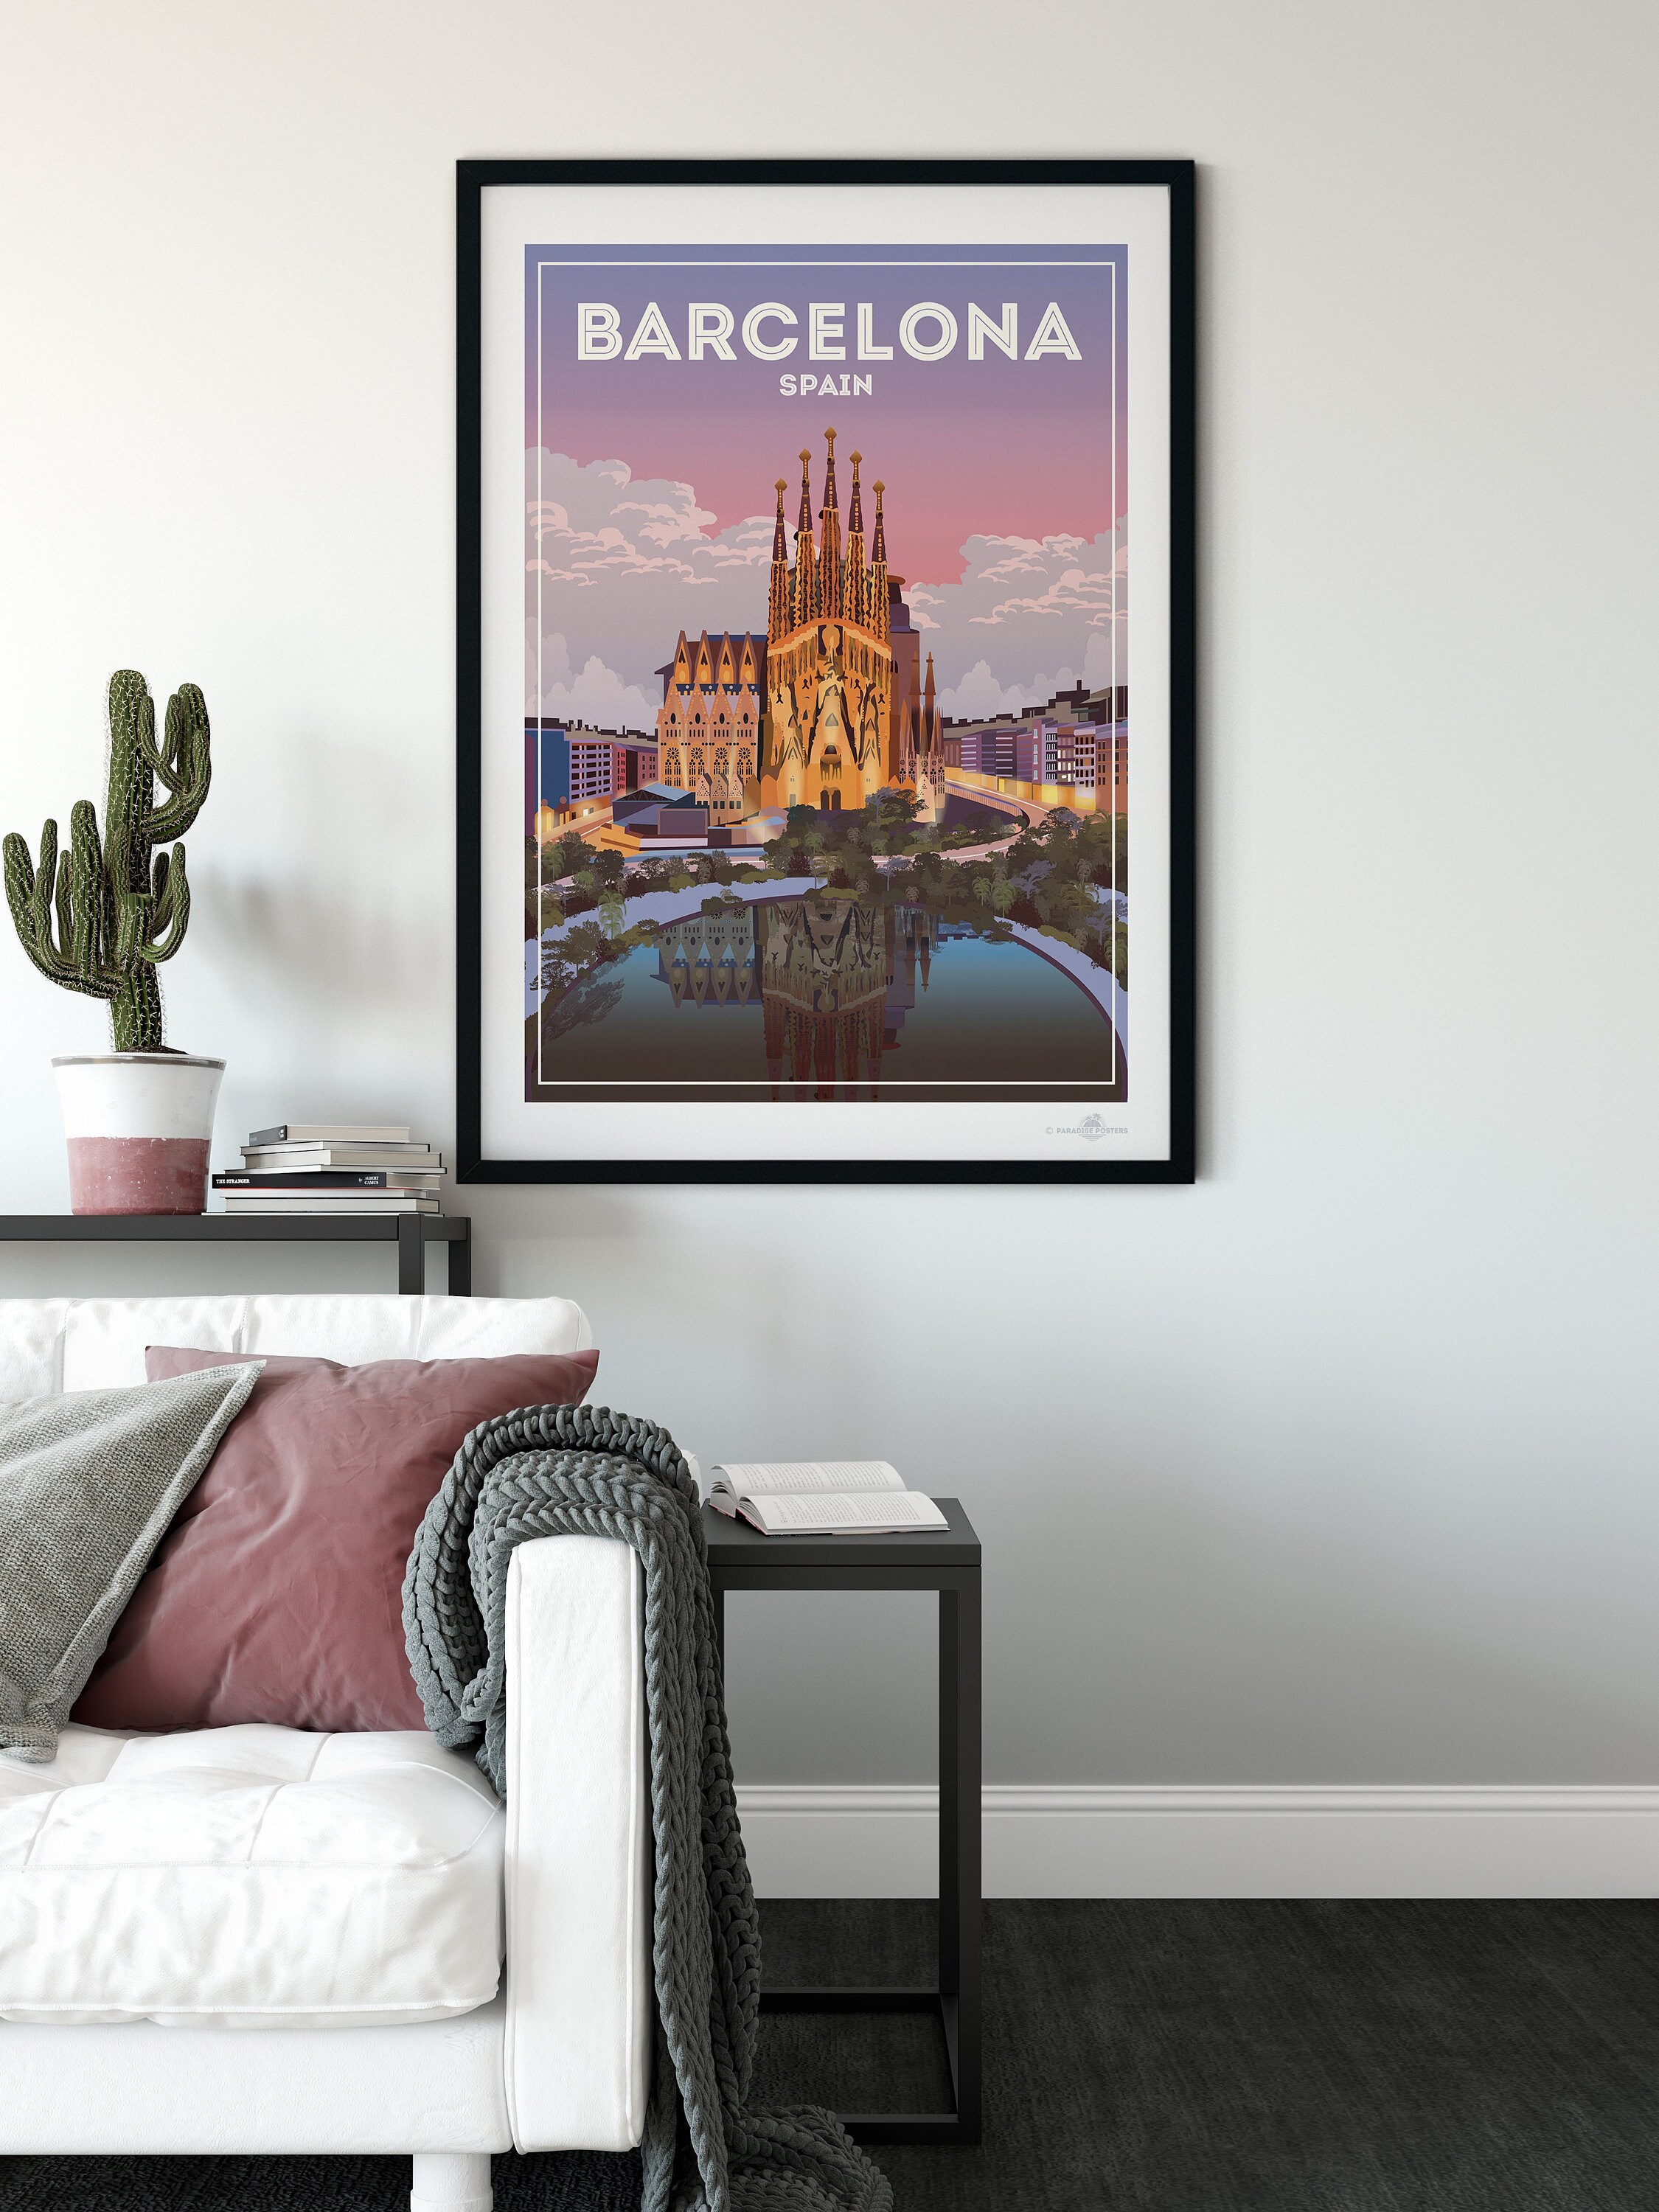 Barcelona Spain Poster Print - Etsy UK